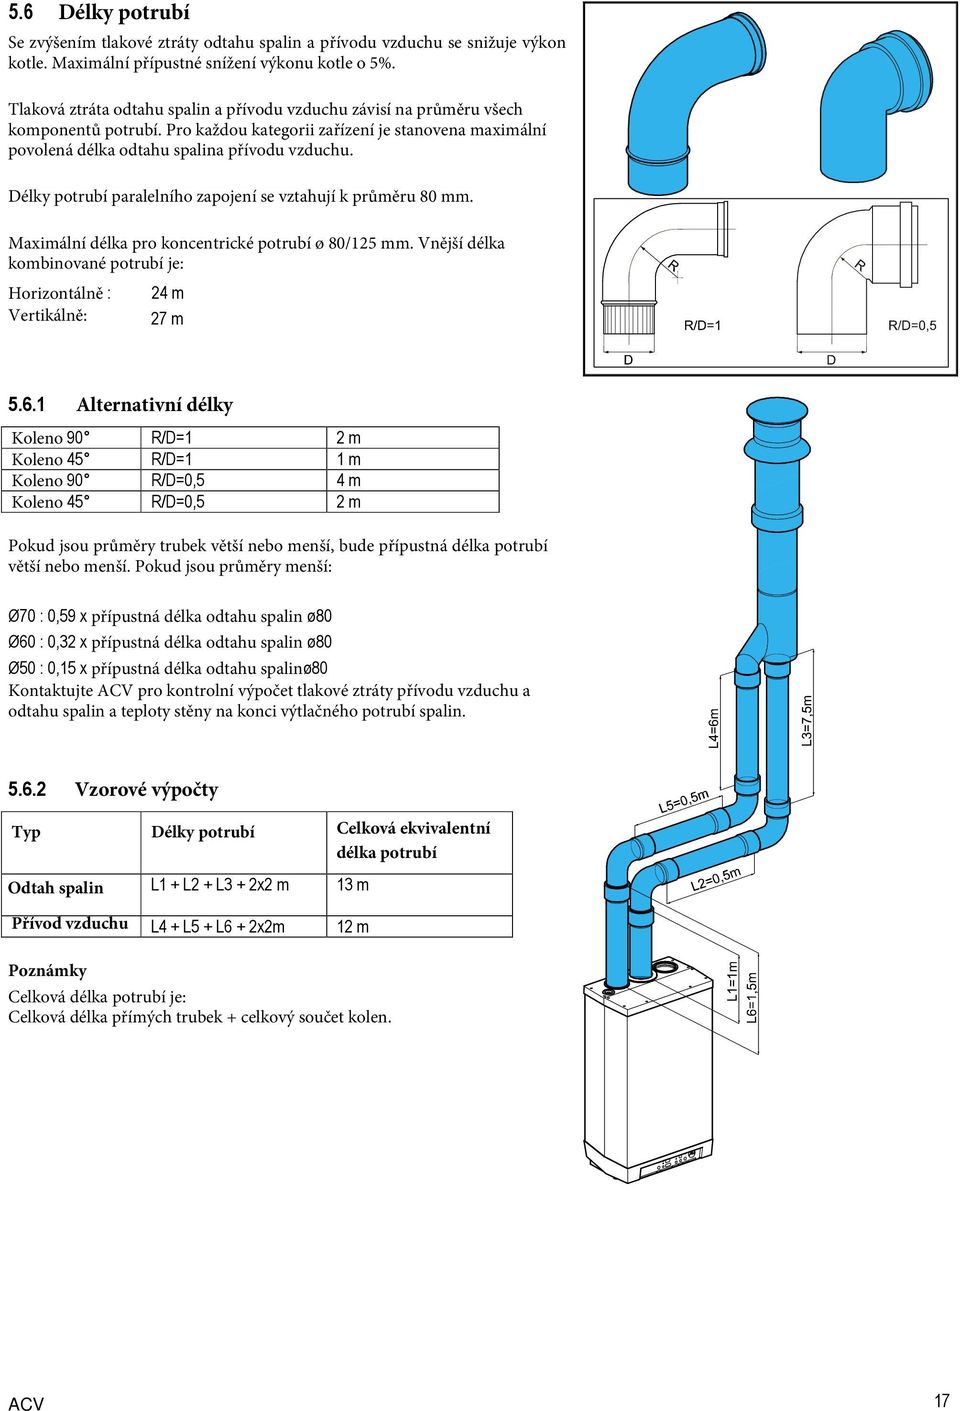 Délky potrubí paralelního zapojení se vztahují k průměru 80 mm. Maximální délka pro koncentrické potrubí ø 80/125 mm. Vnější délka kombinované potrubí je: Horizontálně : 24 m Vertikálně: 27 m 5.6.